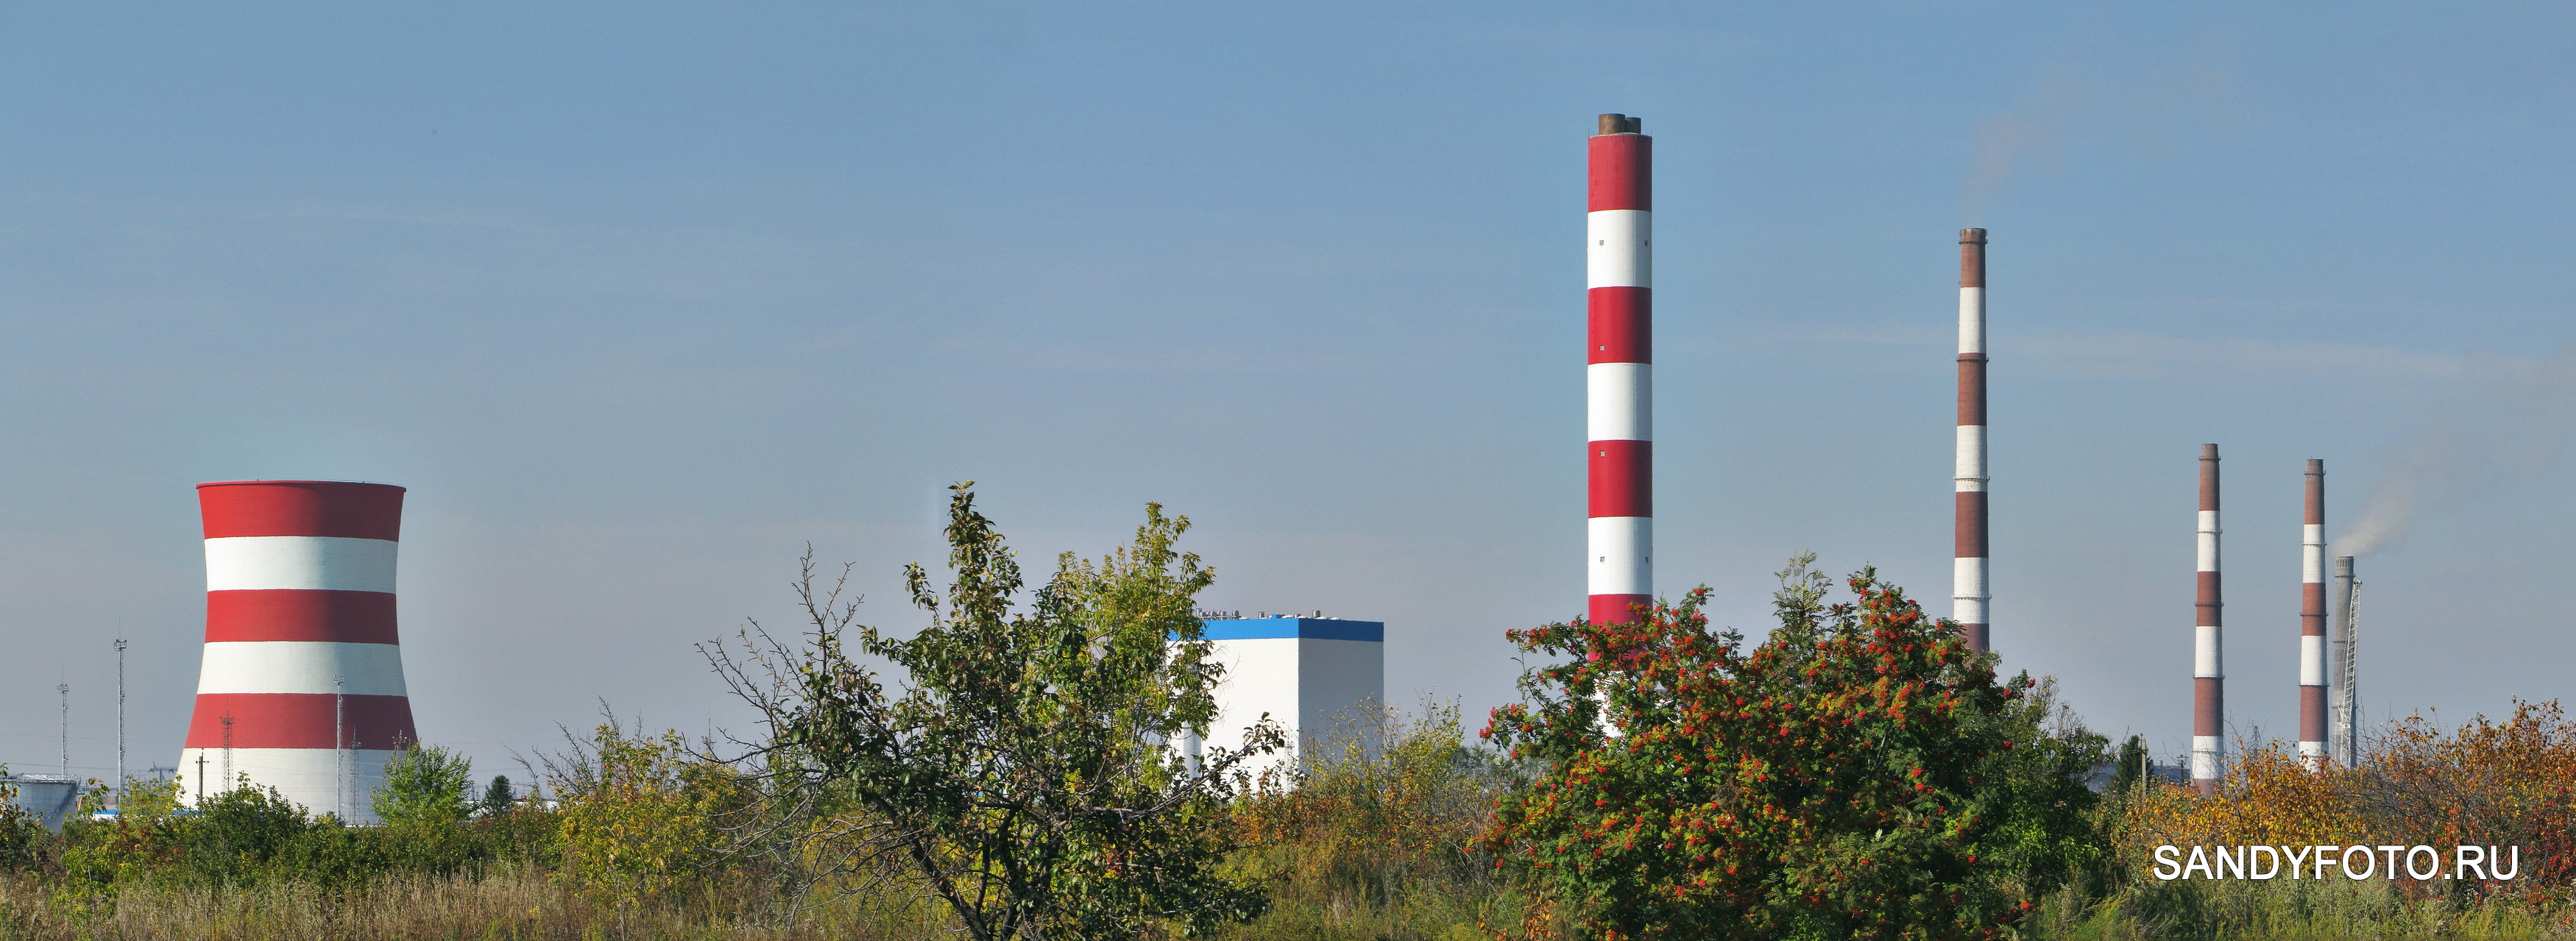 Строительство нового энергоблока на Троицкой ГРЭС (05-09-2015)